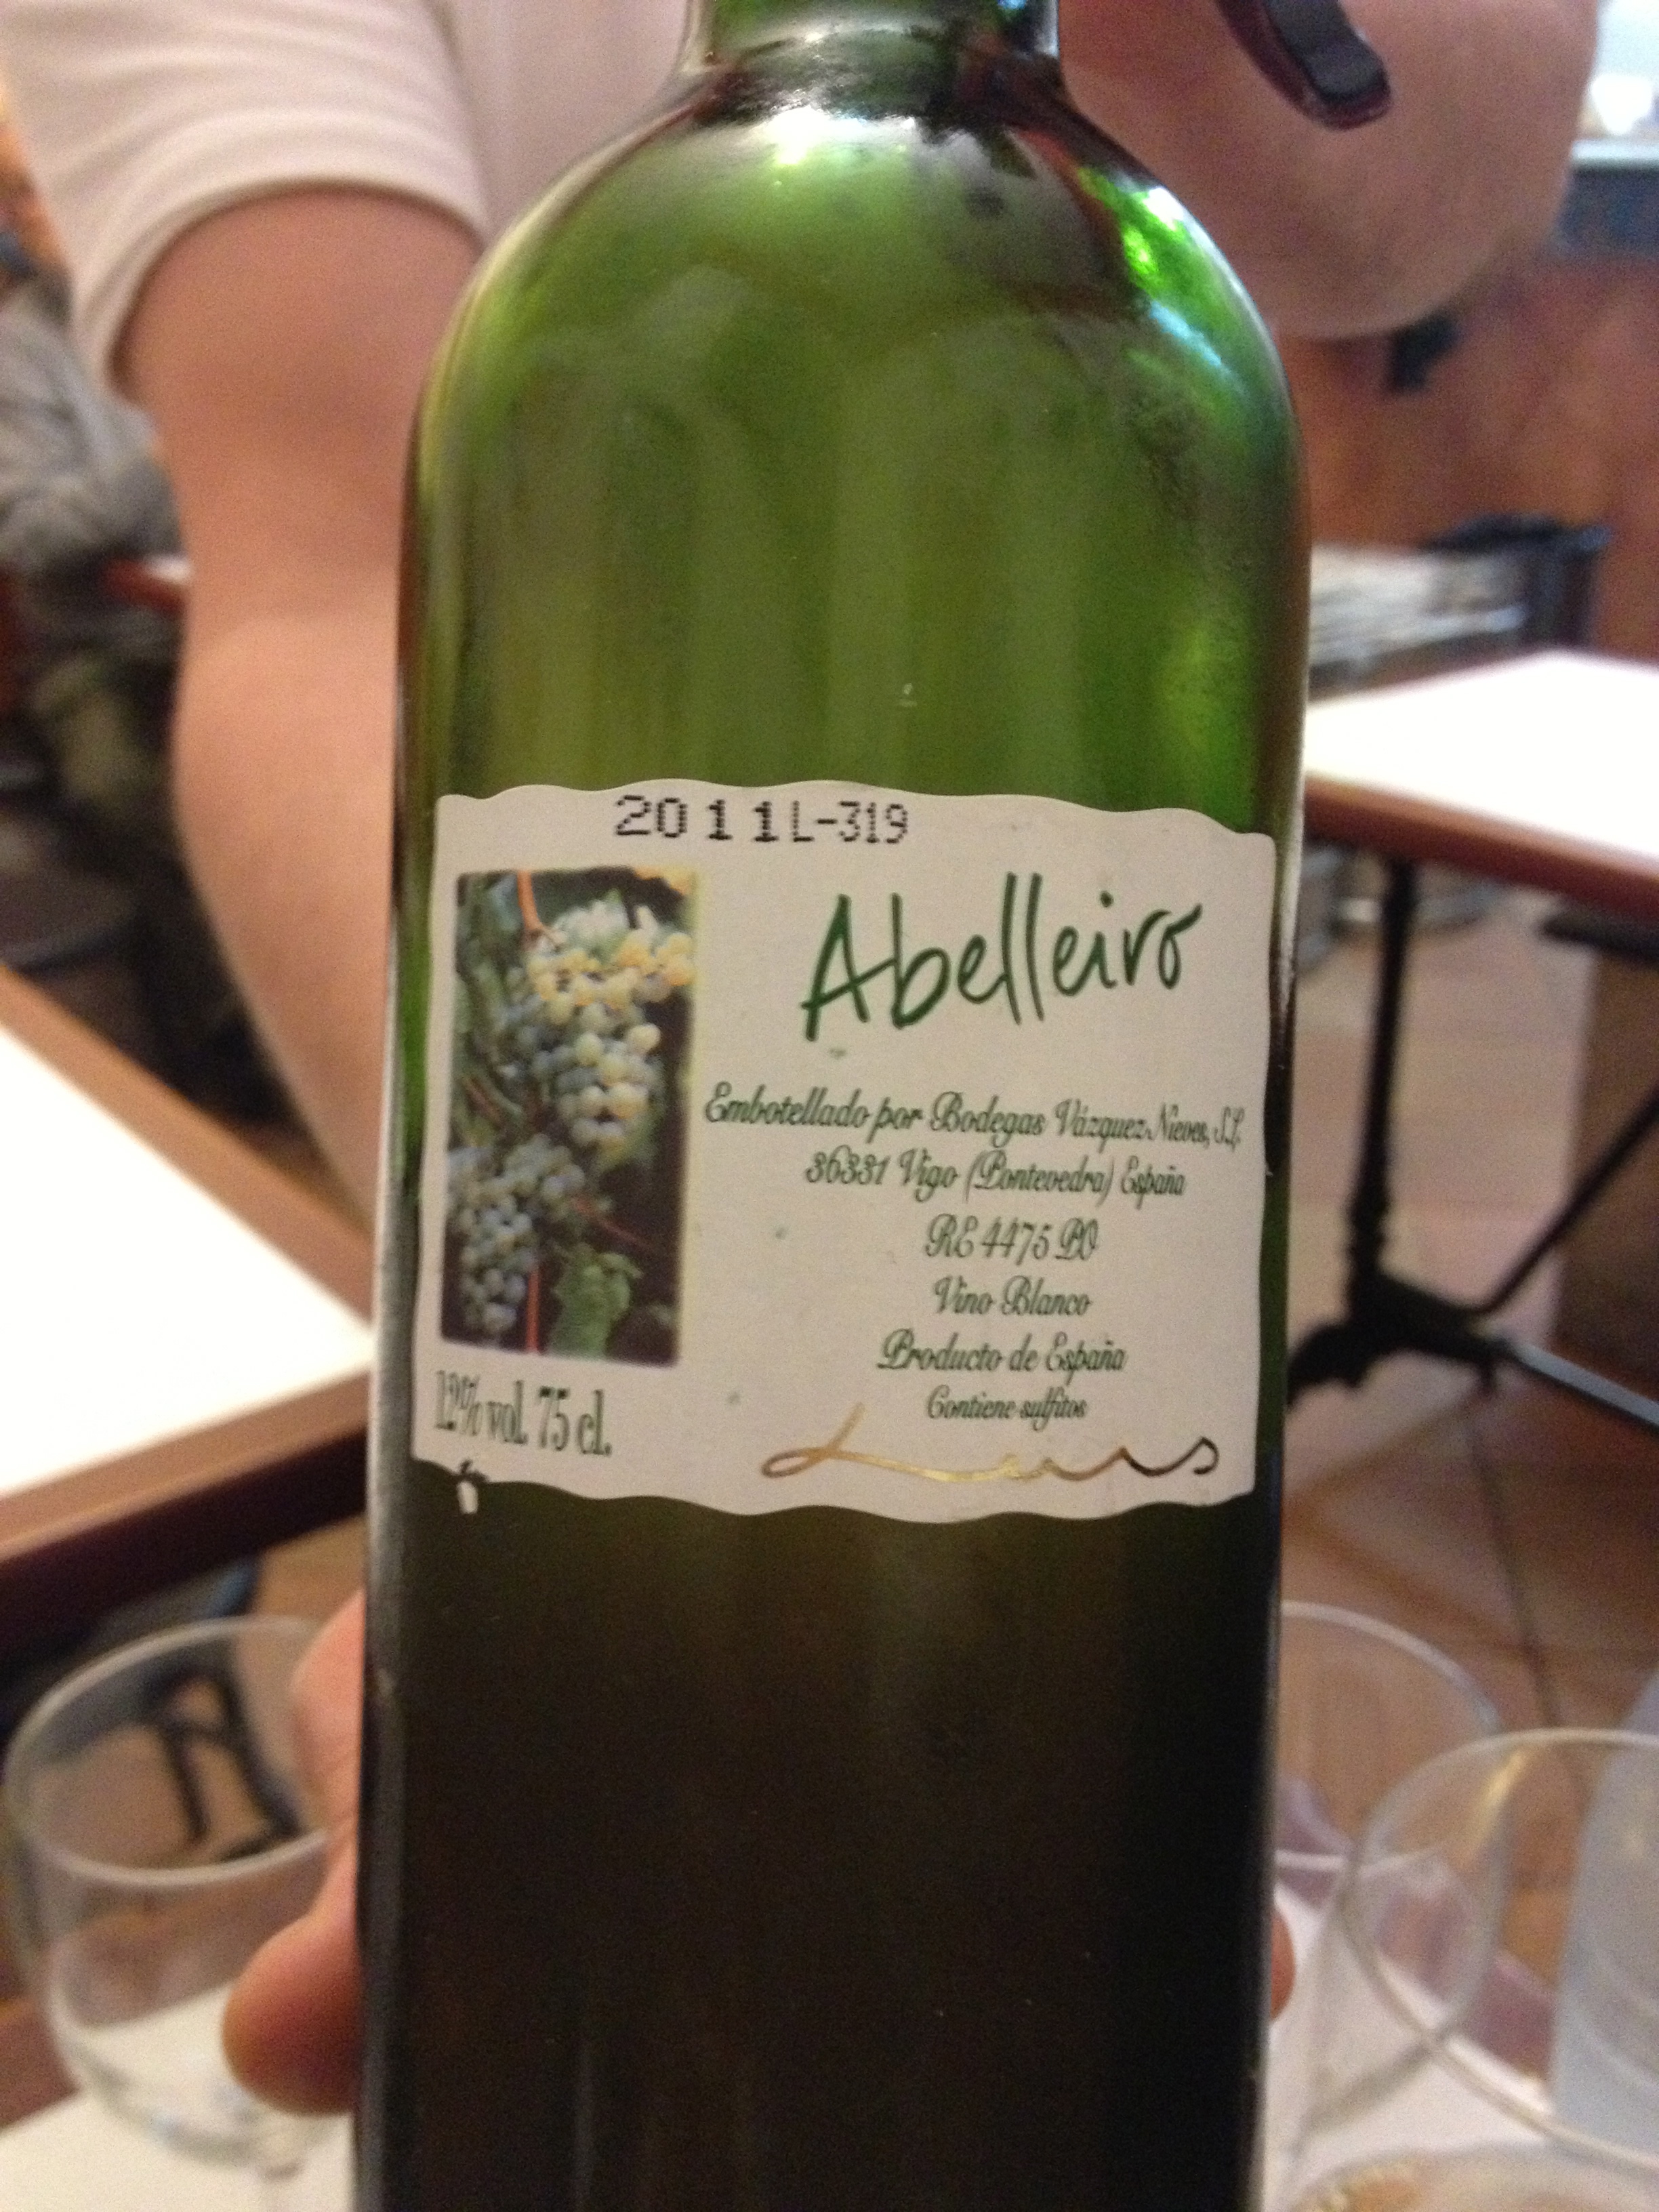 Price-friendly Abelleiro Albarino